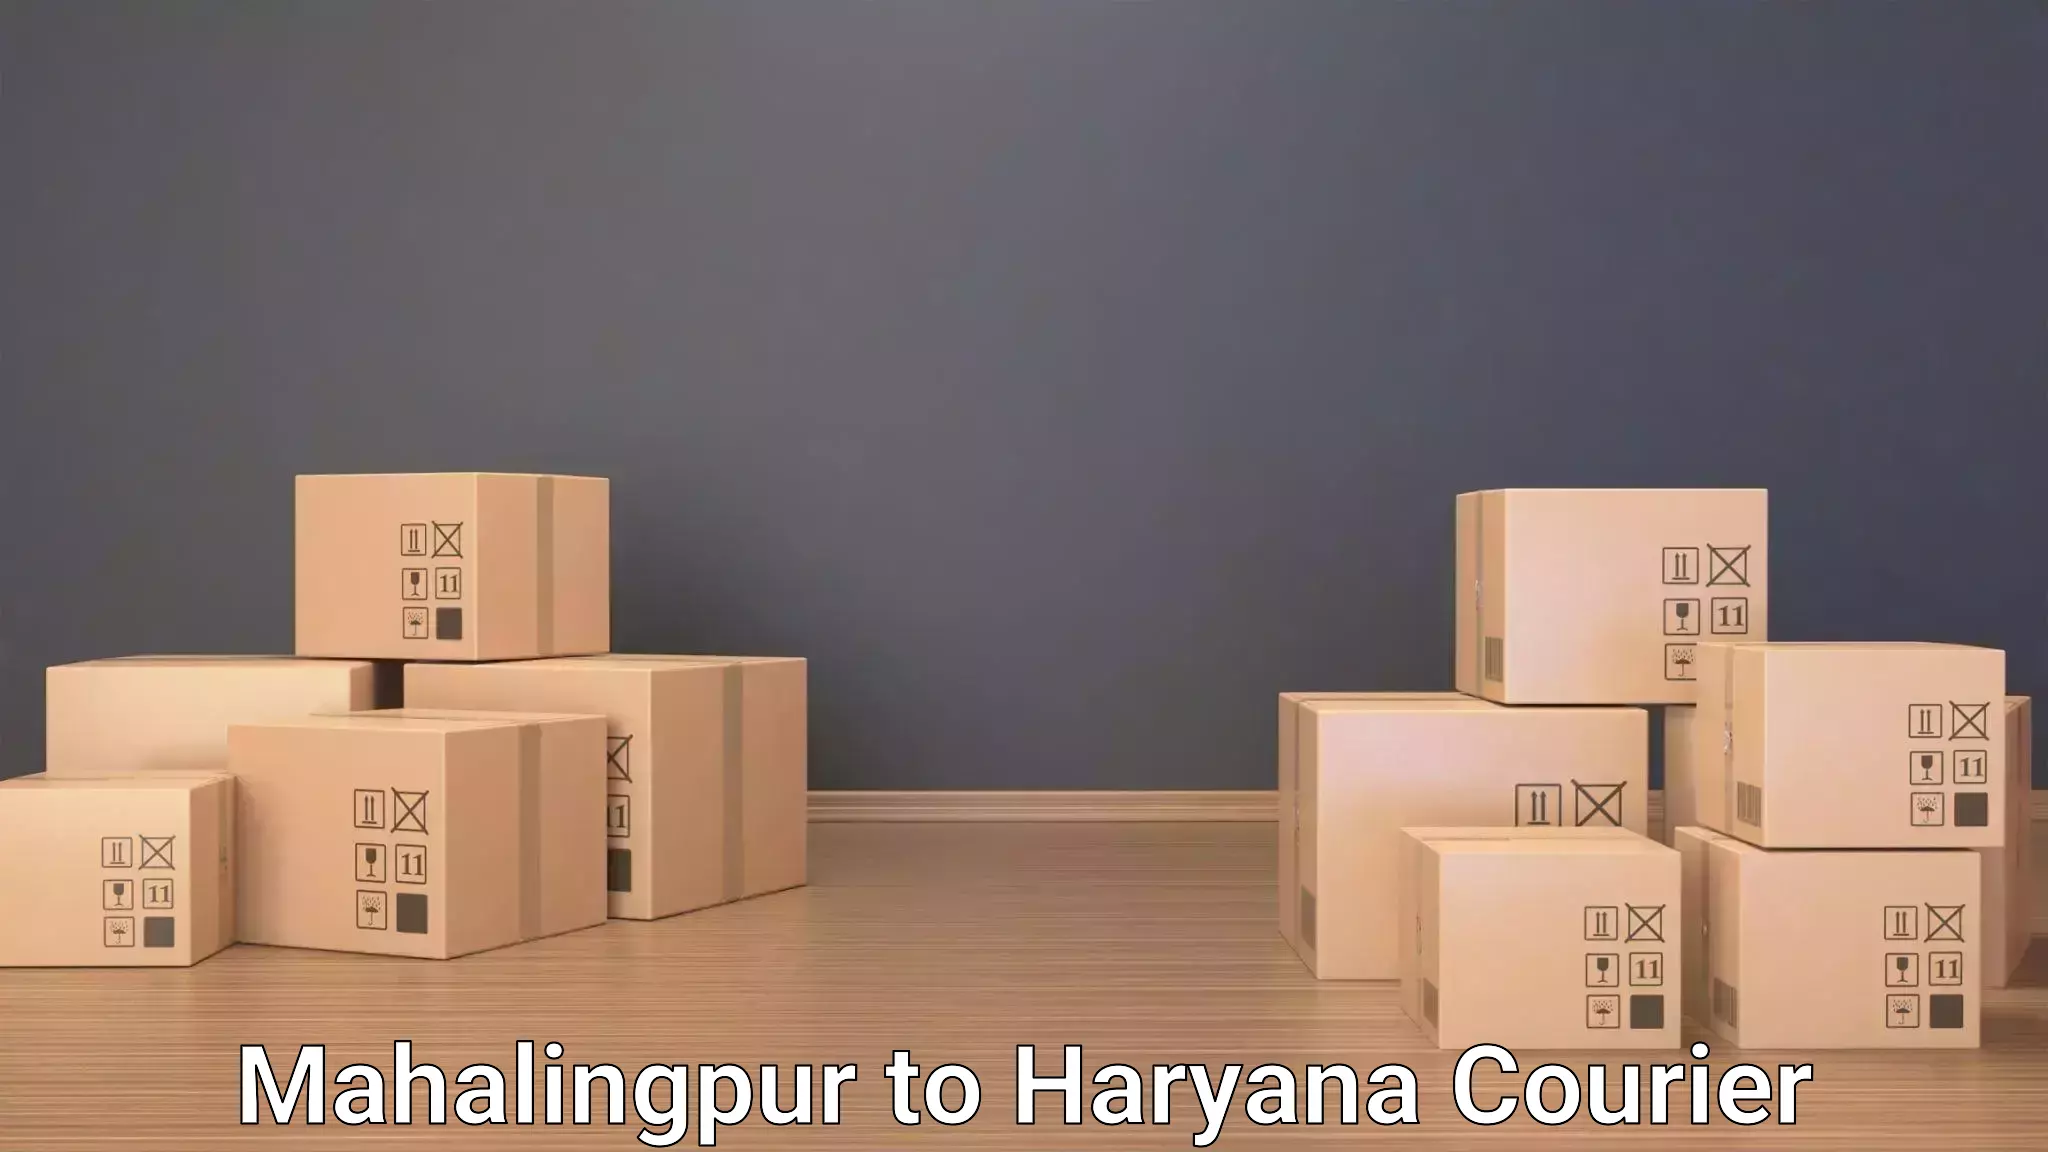 Luggage transport consulting Mahalingpur to Julana